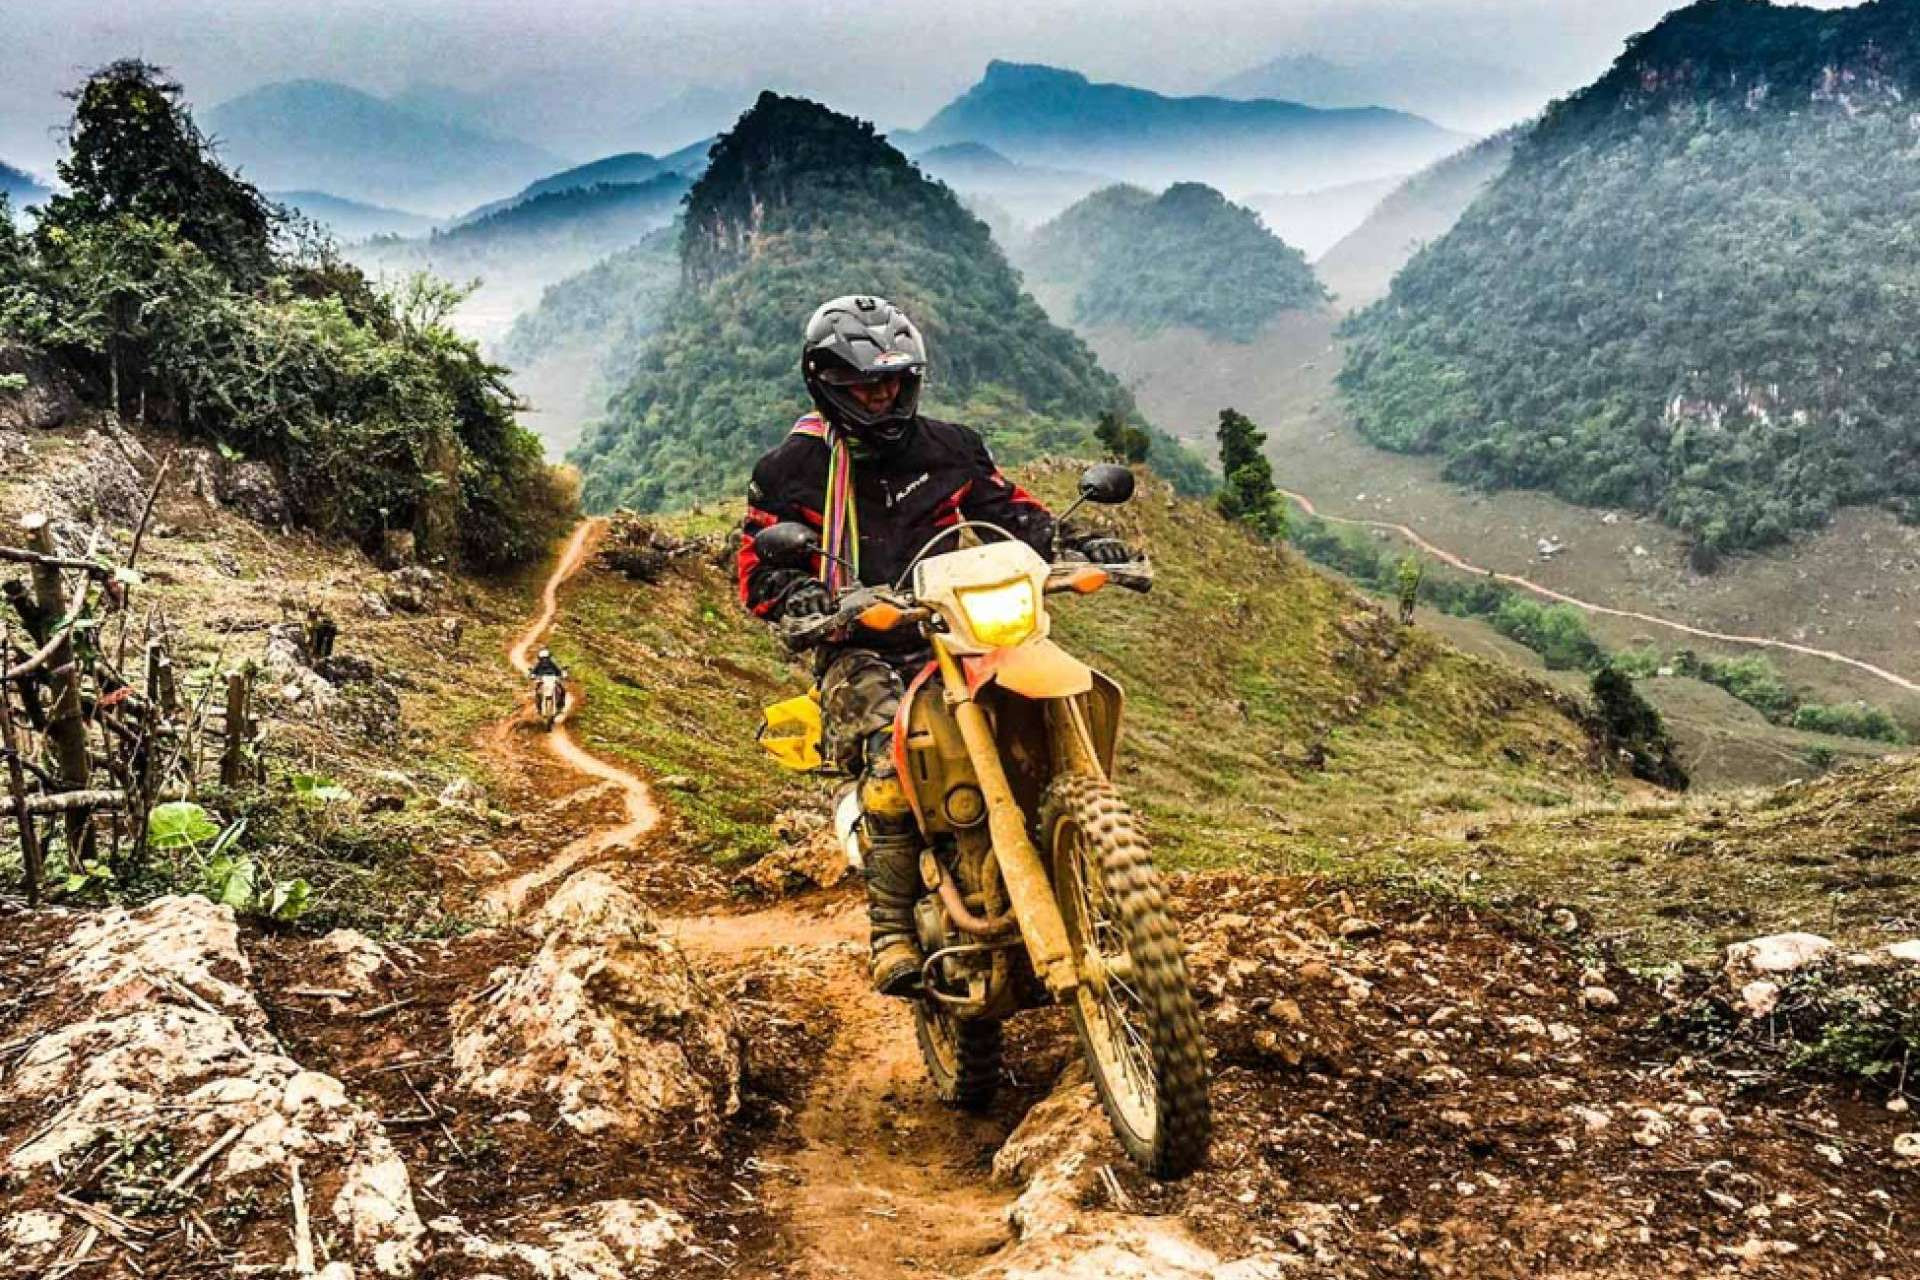  Motorbeach Viajes invita a vivir una aventura conociendo a Vietnam en moto 